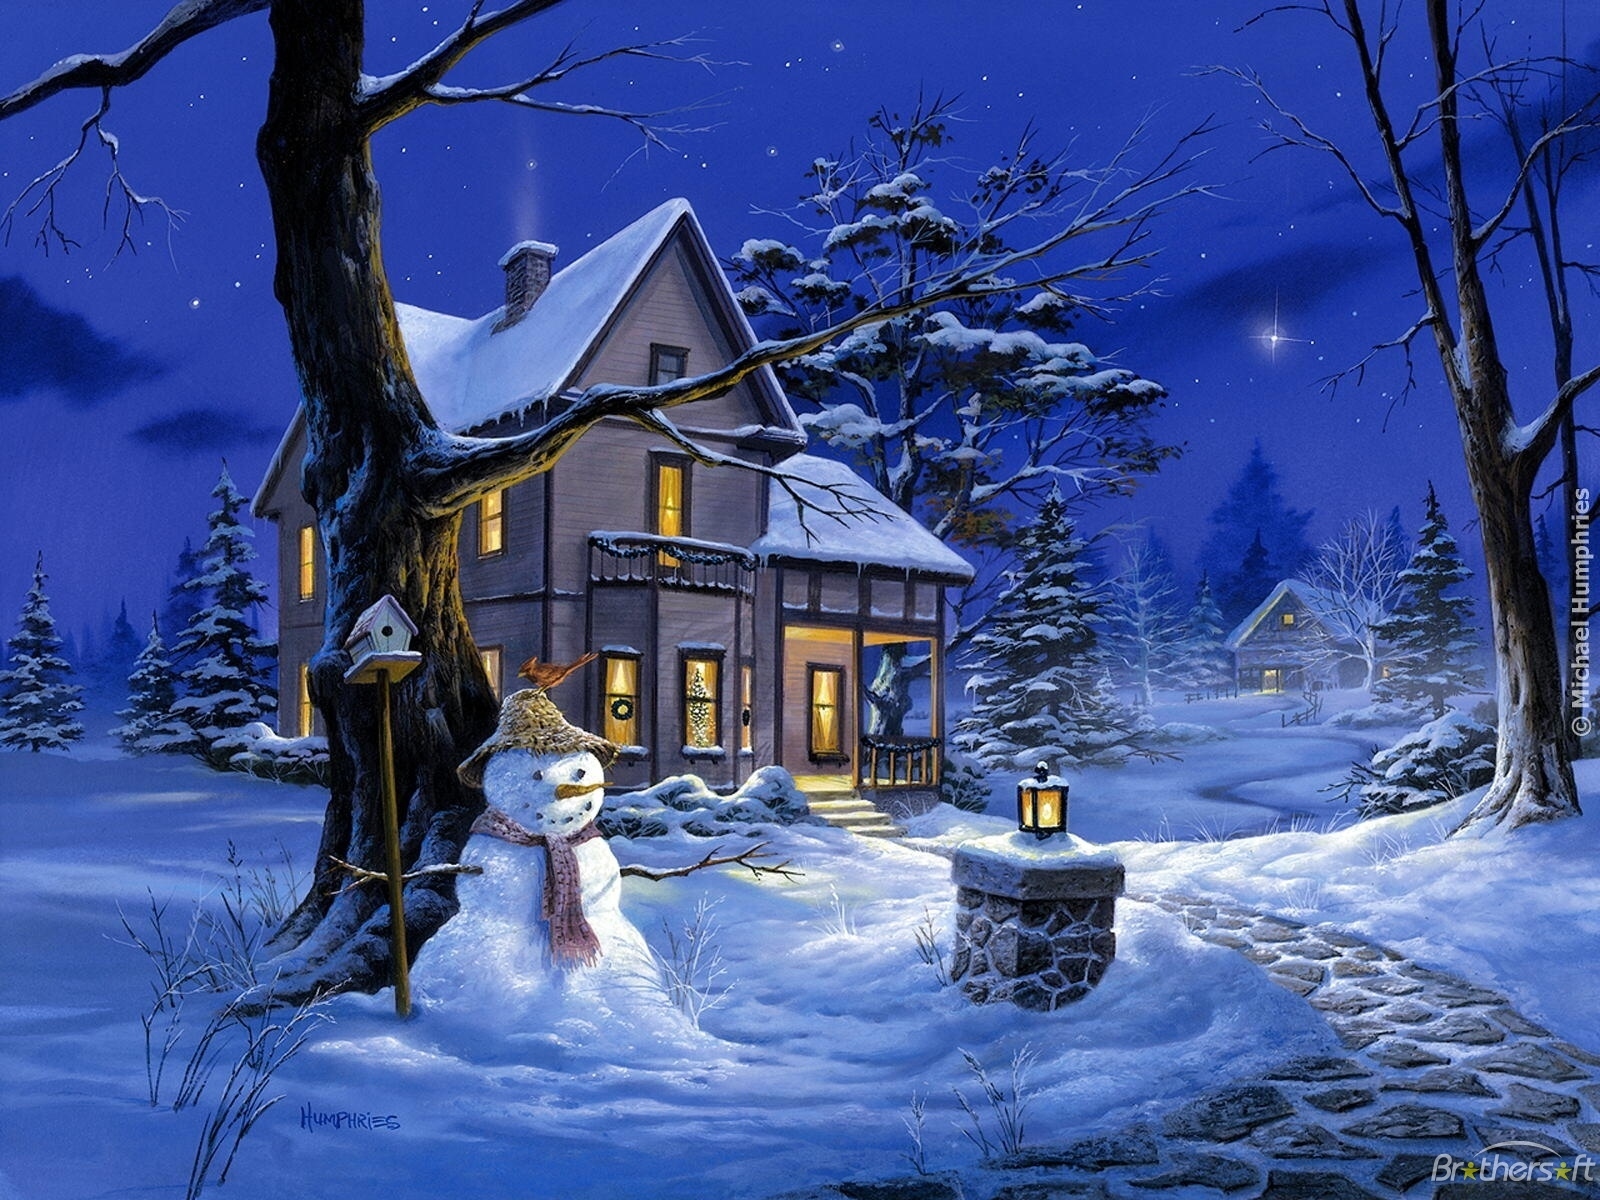 イメージを携帯電話にダウンロード 風景 冬 家 新年 雪 クリスマス 写真 無料